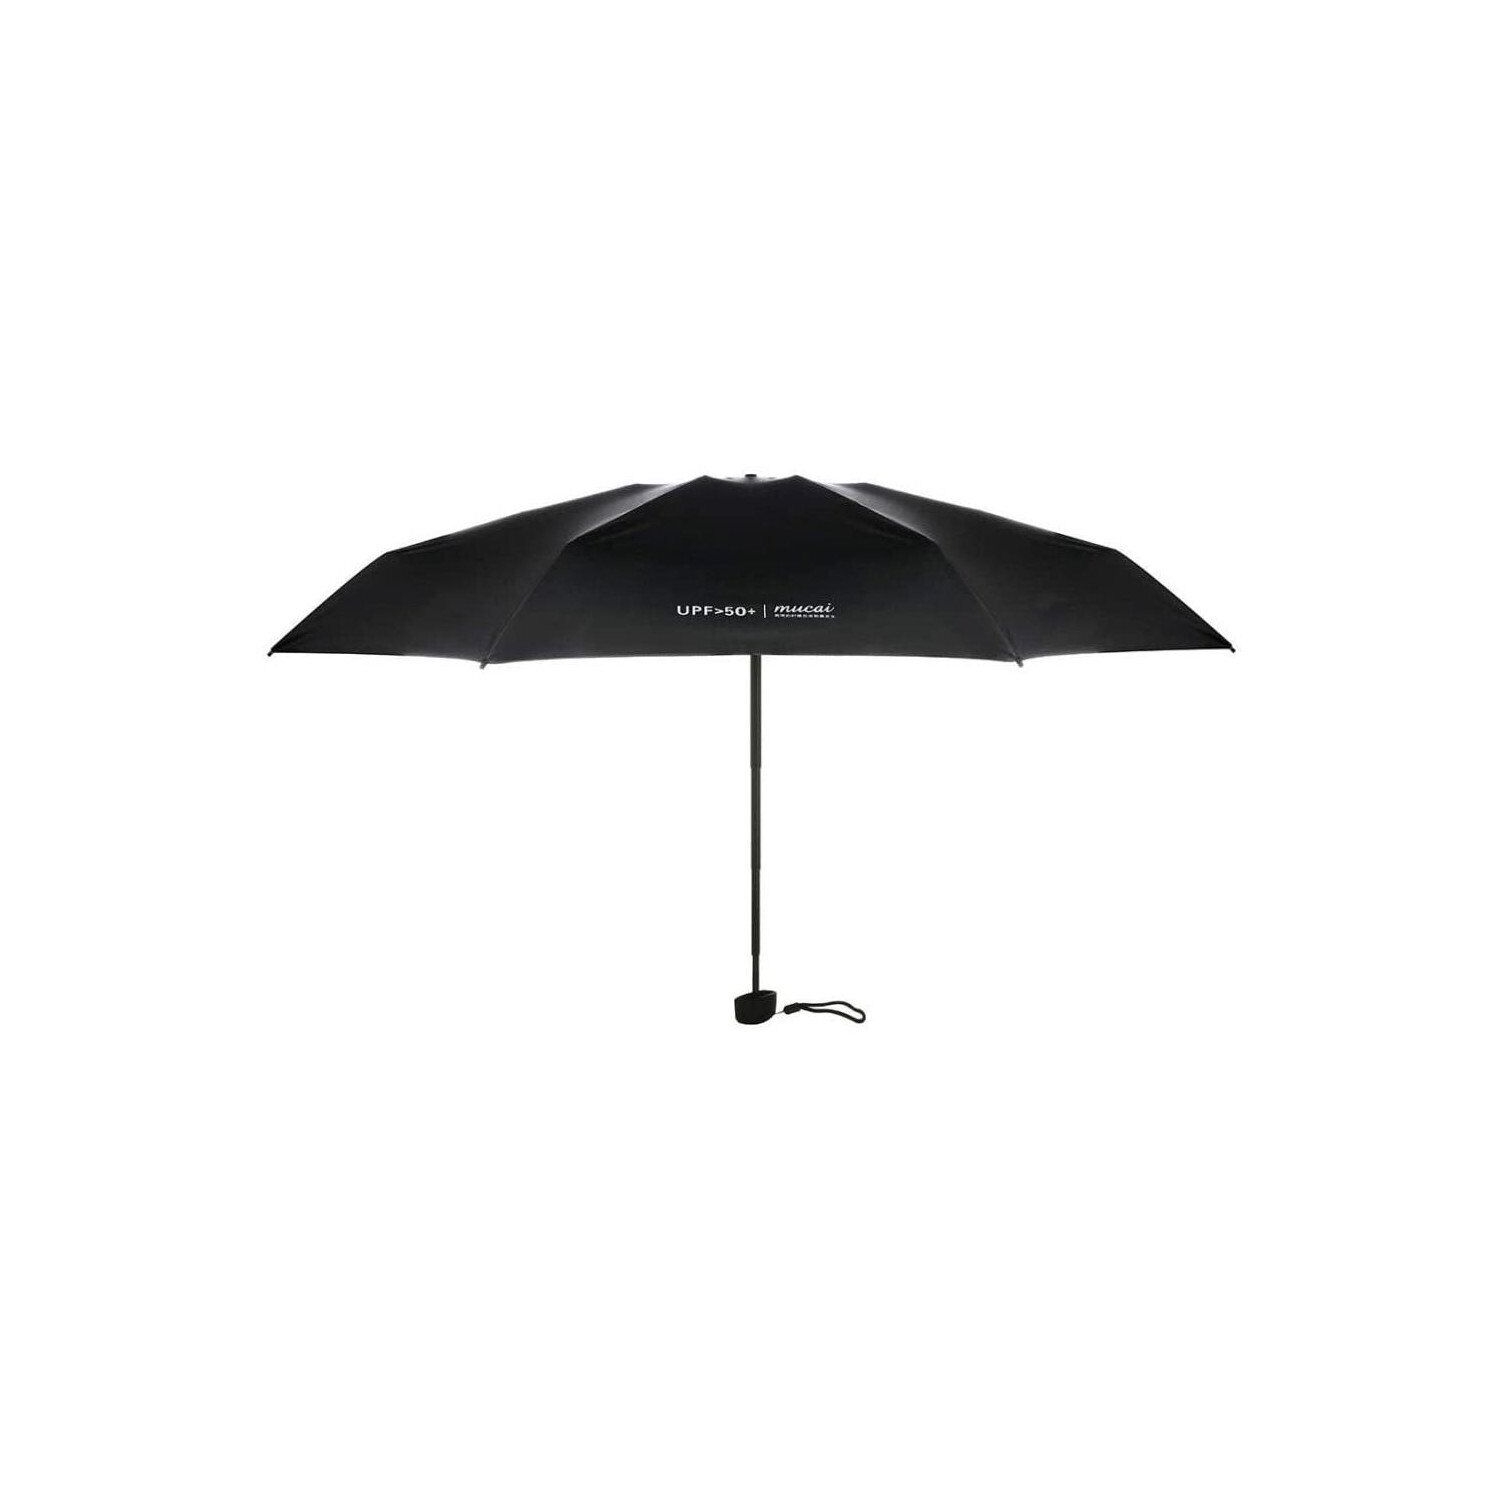 parapluie anti uv - Parapluie de France